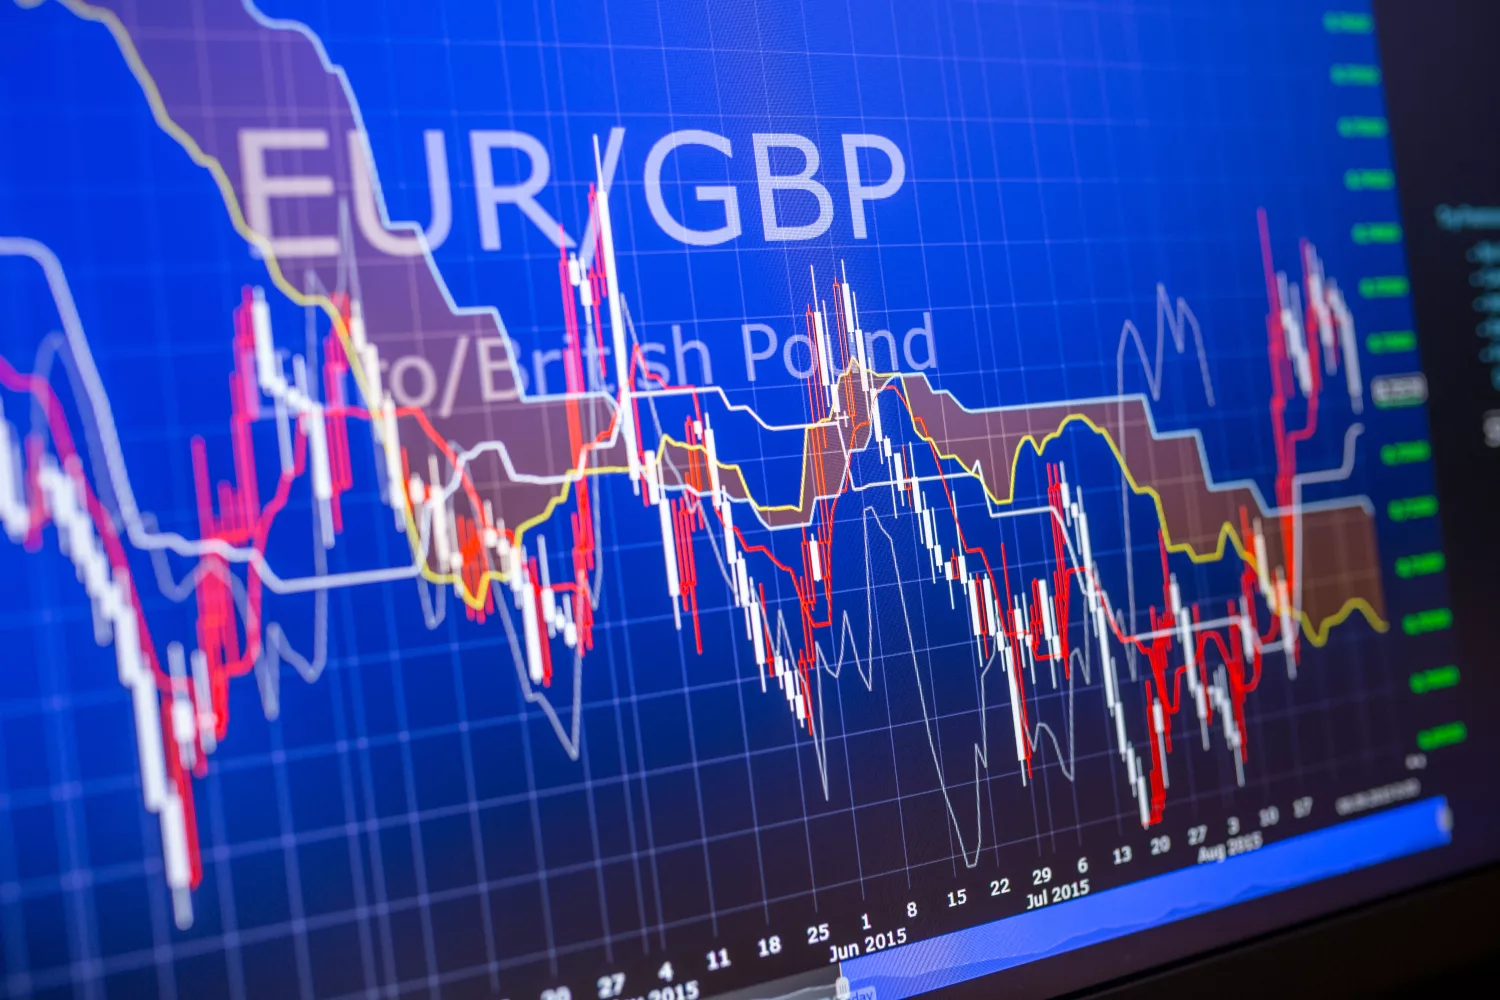 EUR/GBP tăng trở lại gần mức 0.8450 khi nhà đầu tư kỳ vọng BoE sẽ giảm lãi suất